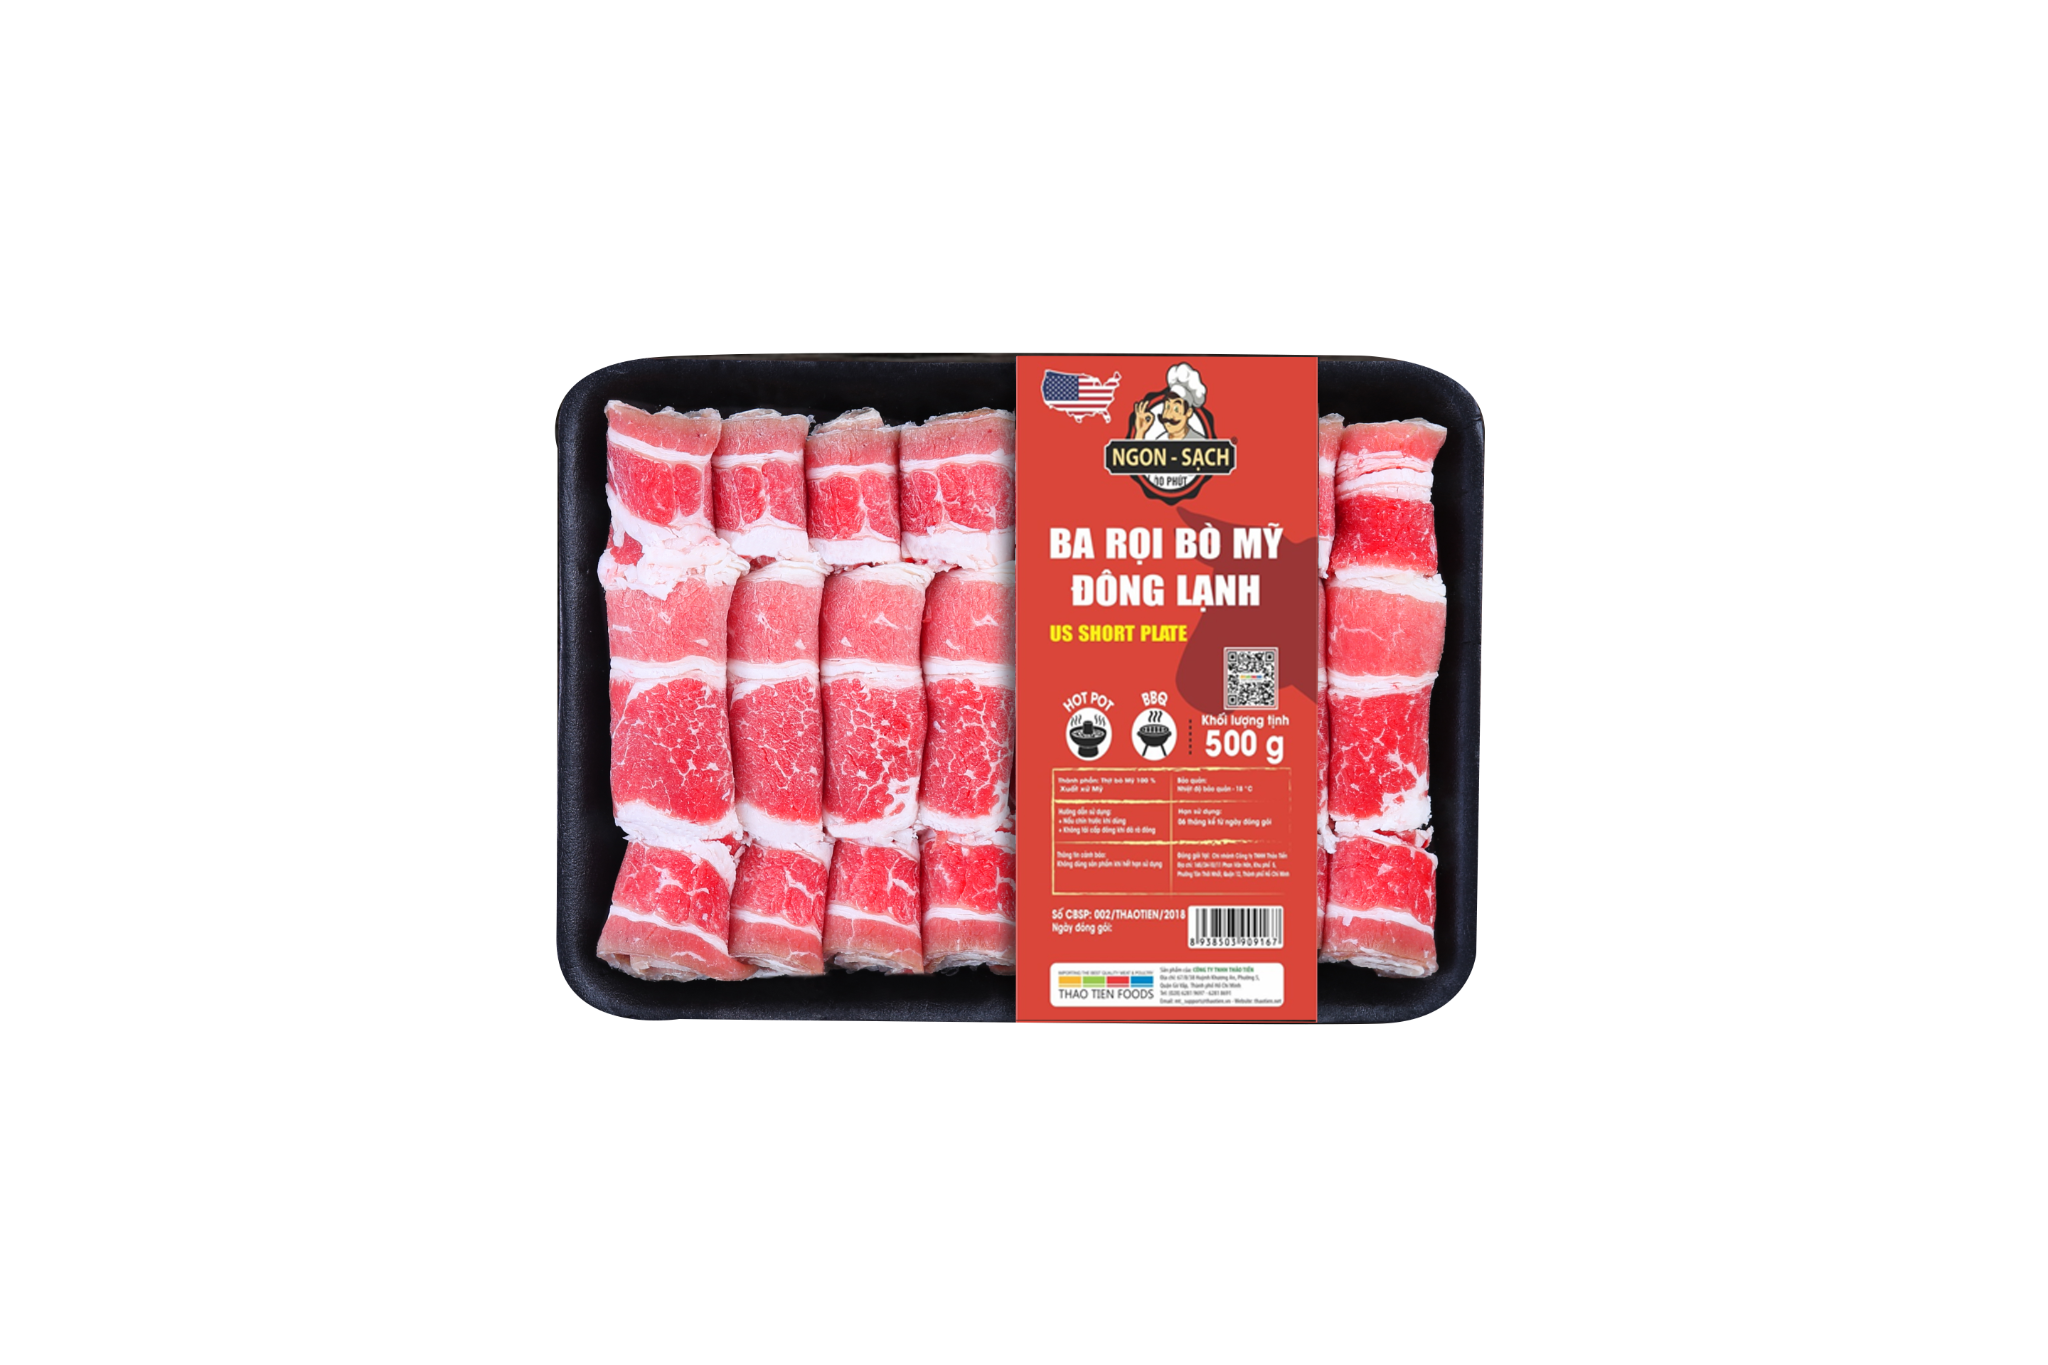  Thịt ba rọi bò Mỹ (Slice 2mm) 300g - 500g 